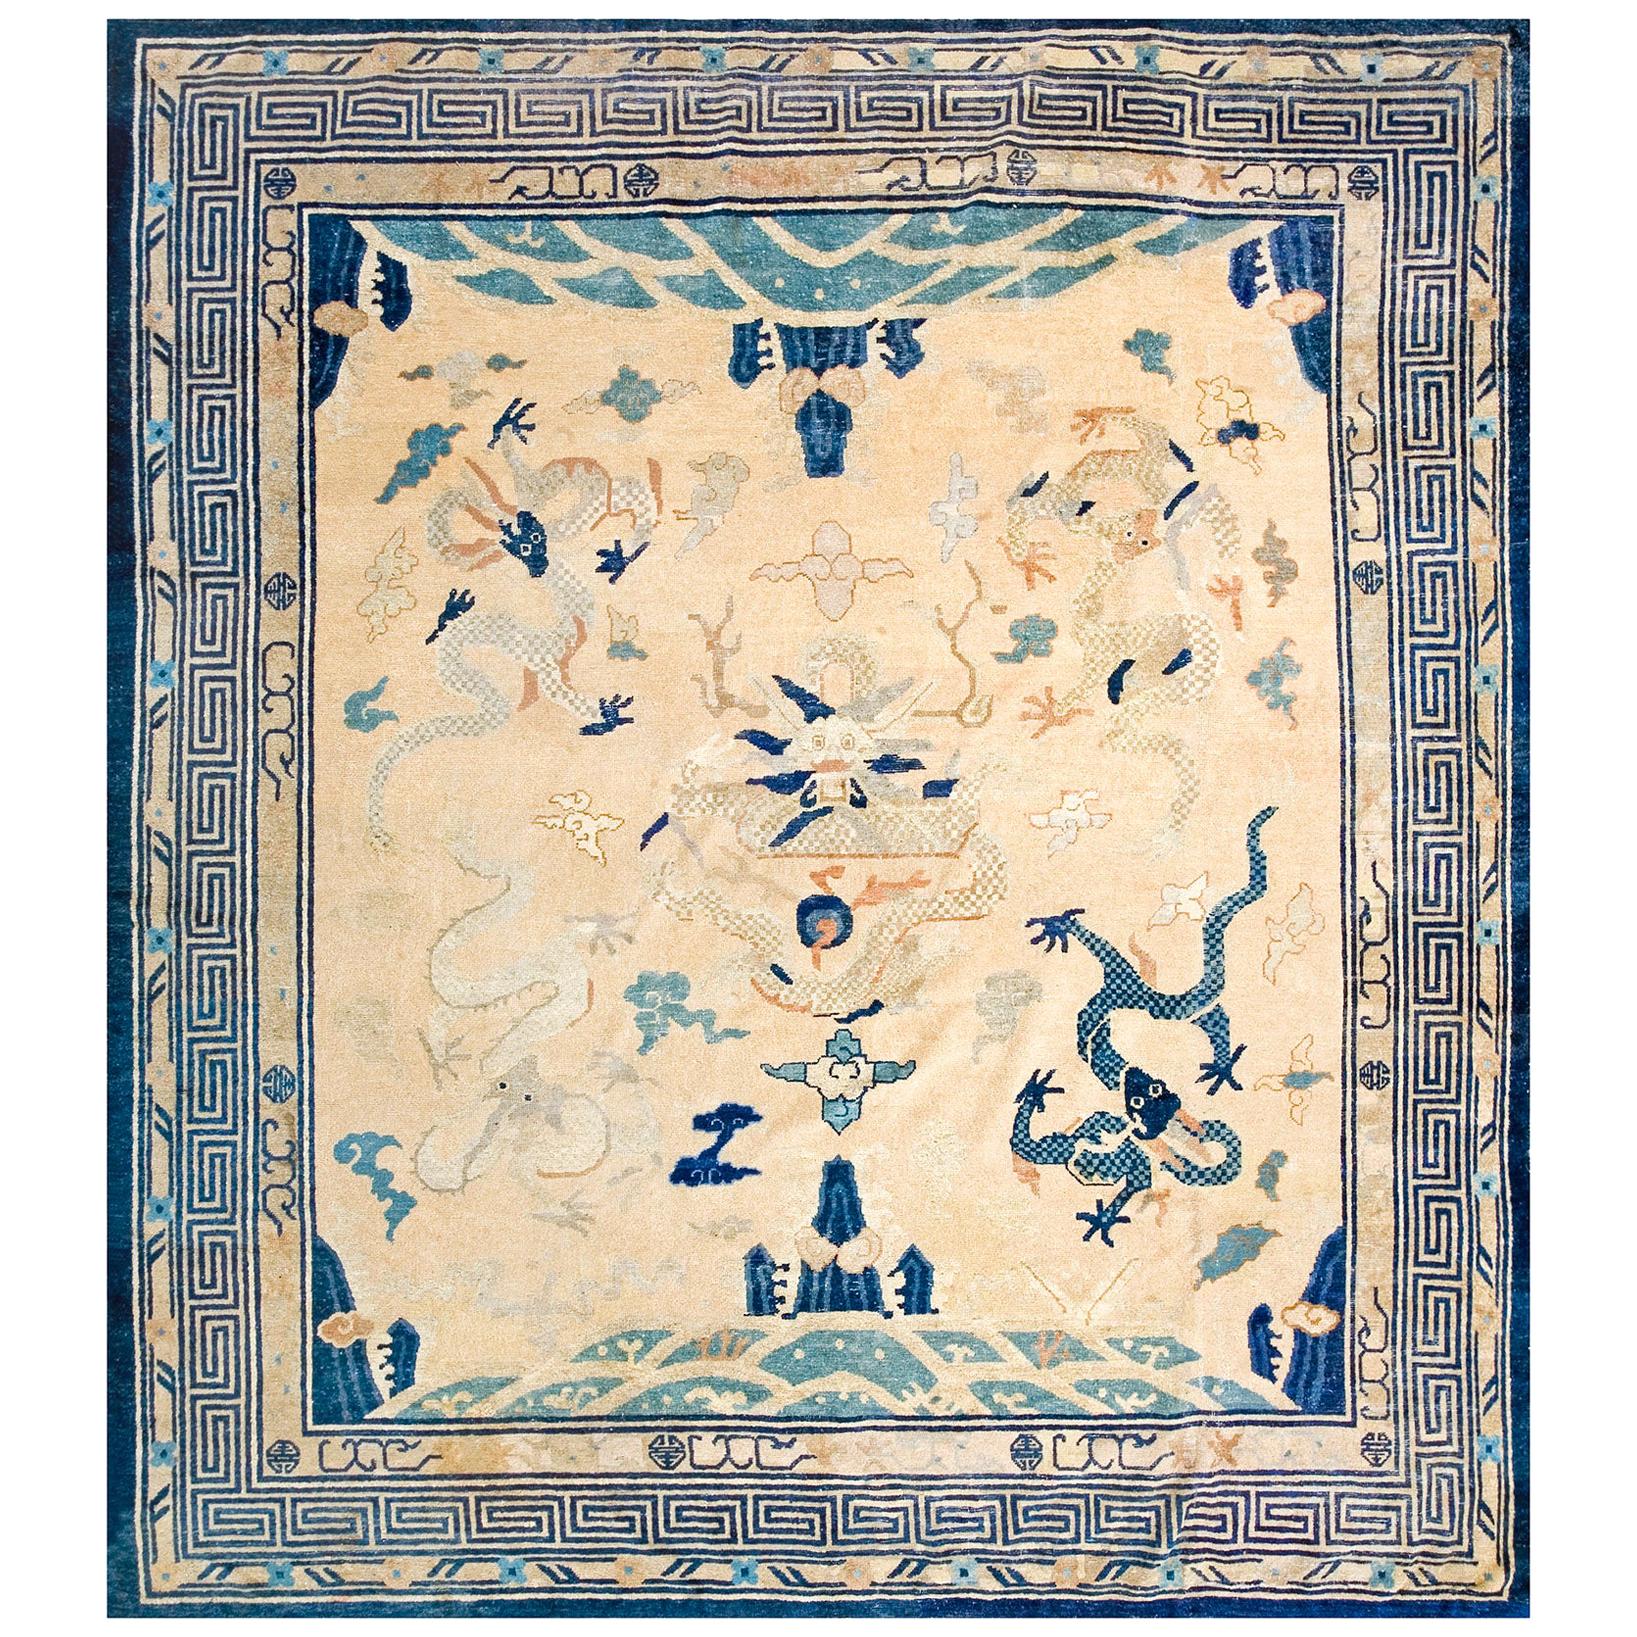 19th Century Chinese Peking Dragon Carpet ( 8'7" x 9'4" - 262 x 284 )